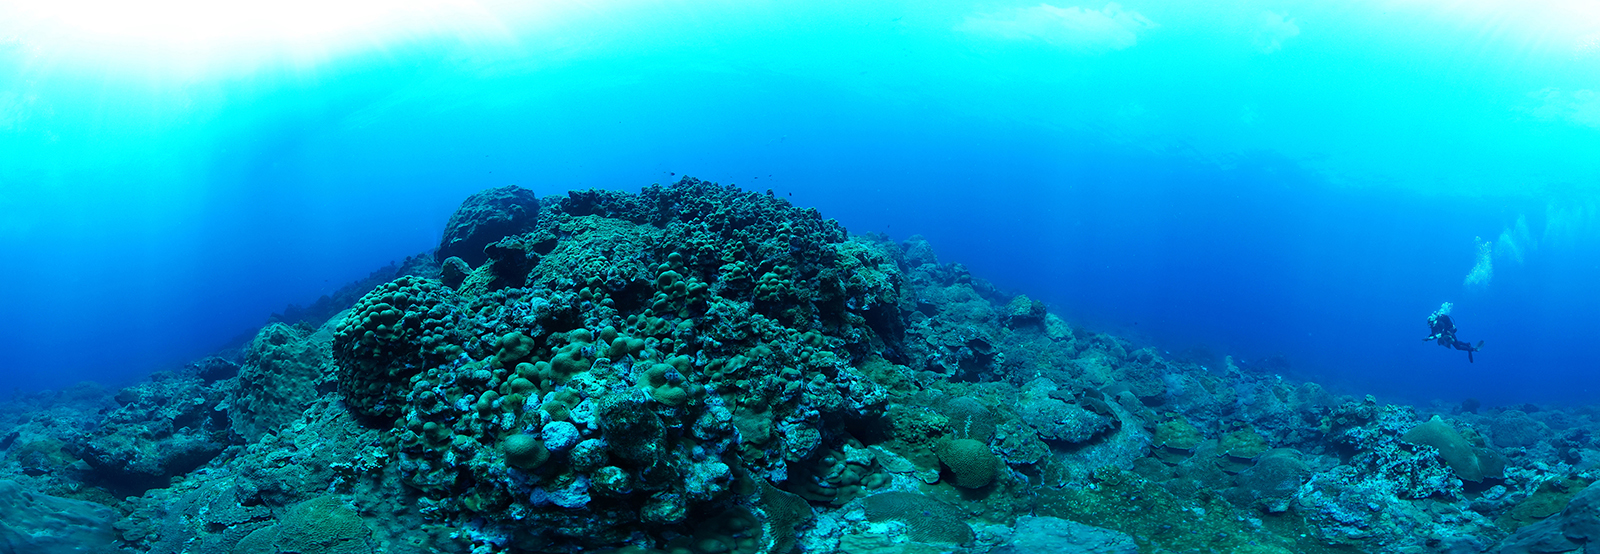 Une photo sous-marine panoramique de coraux sains recouvrant un récif